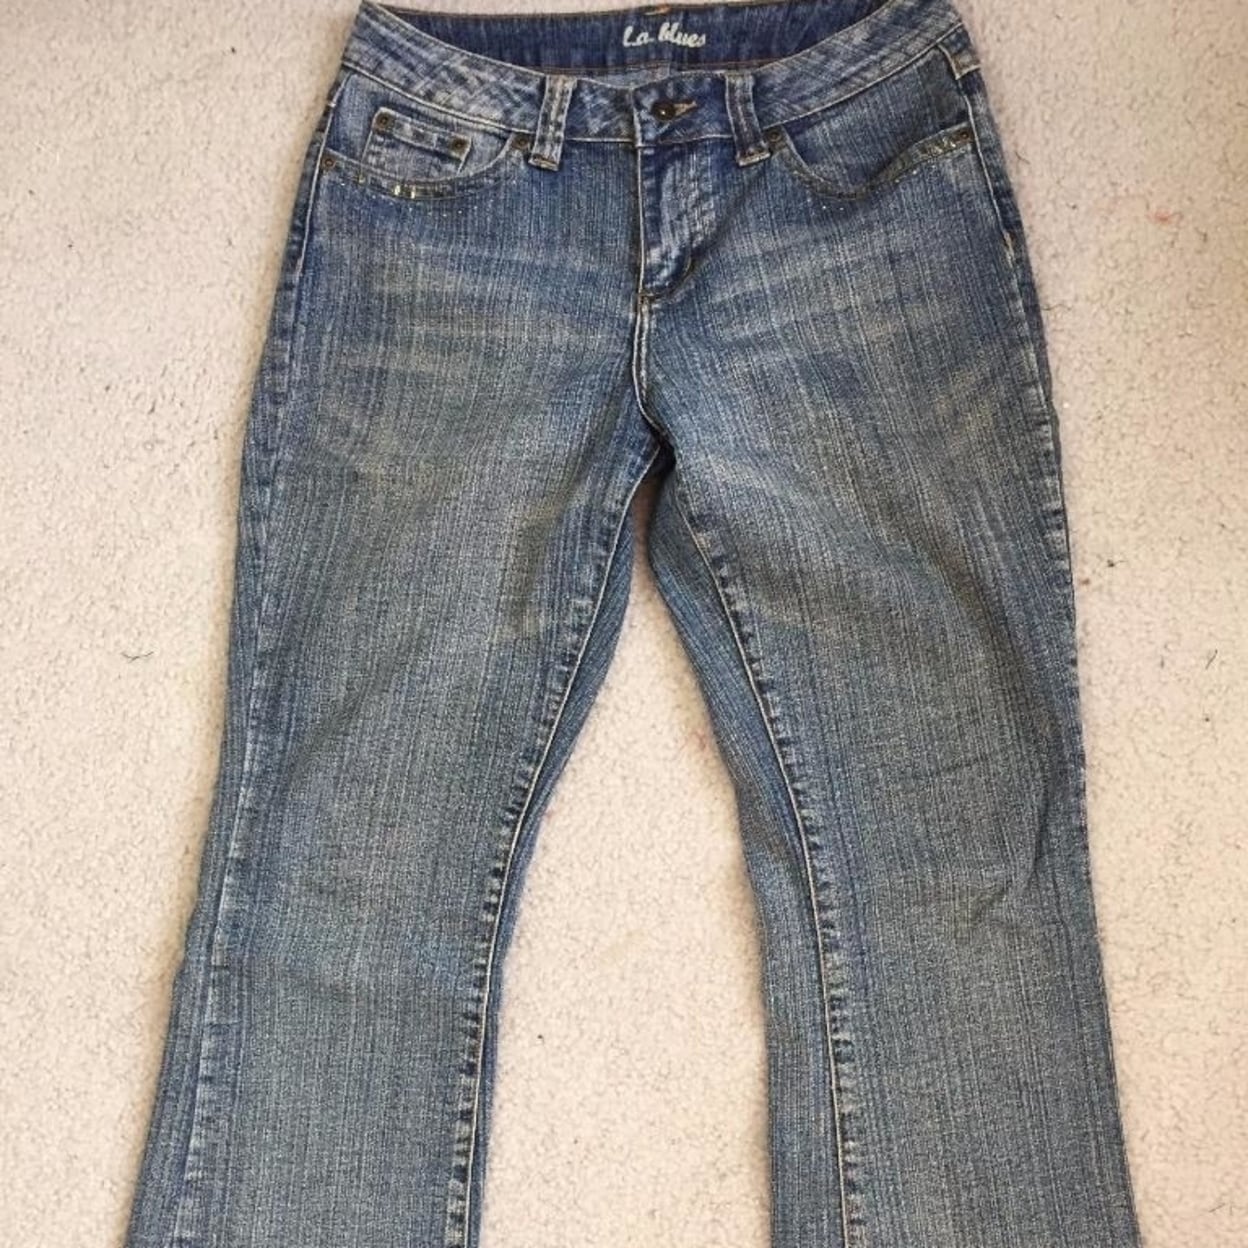 size 8 petite jeans